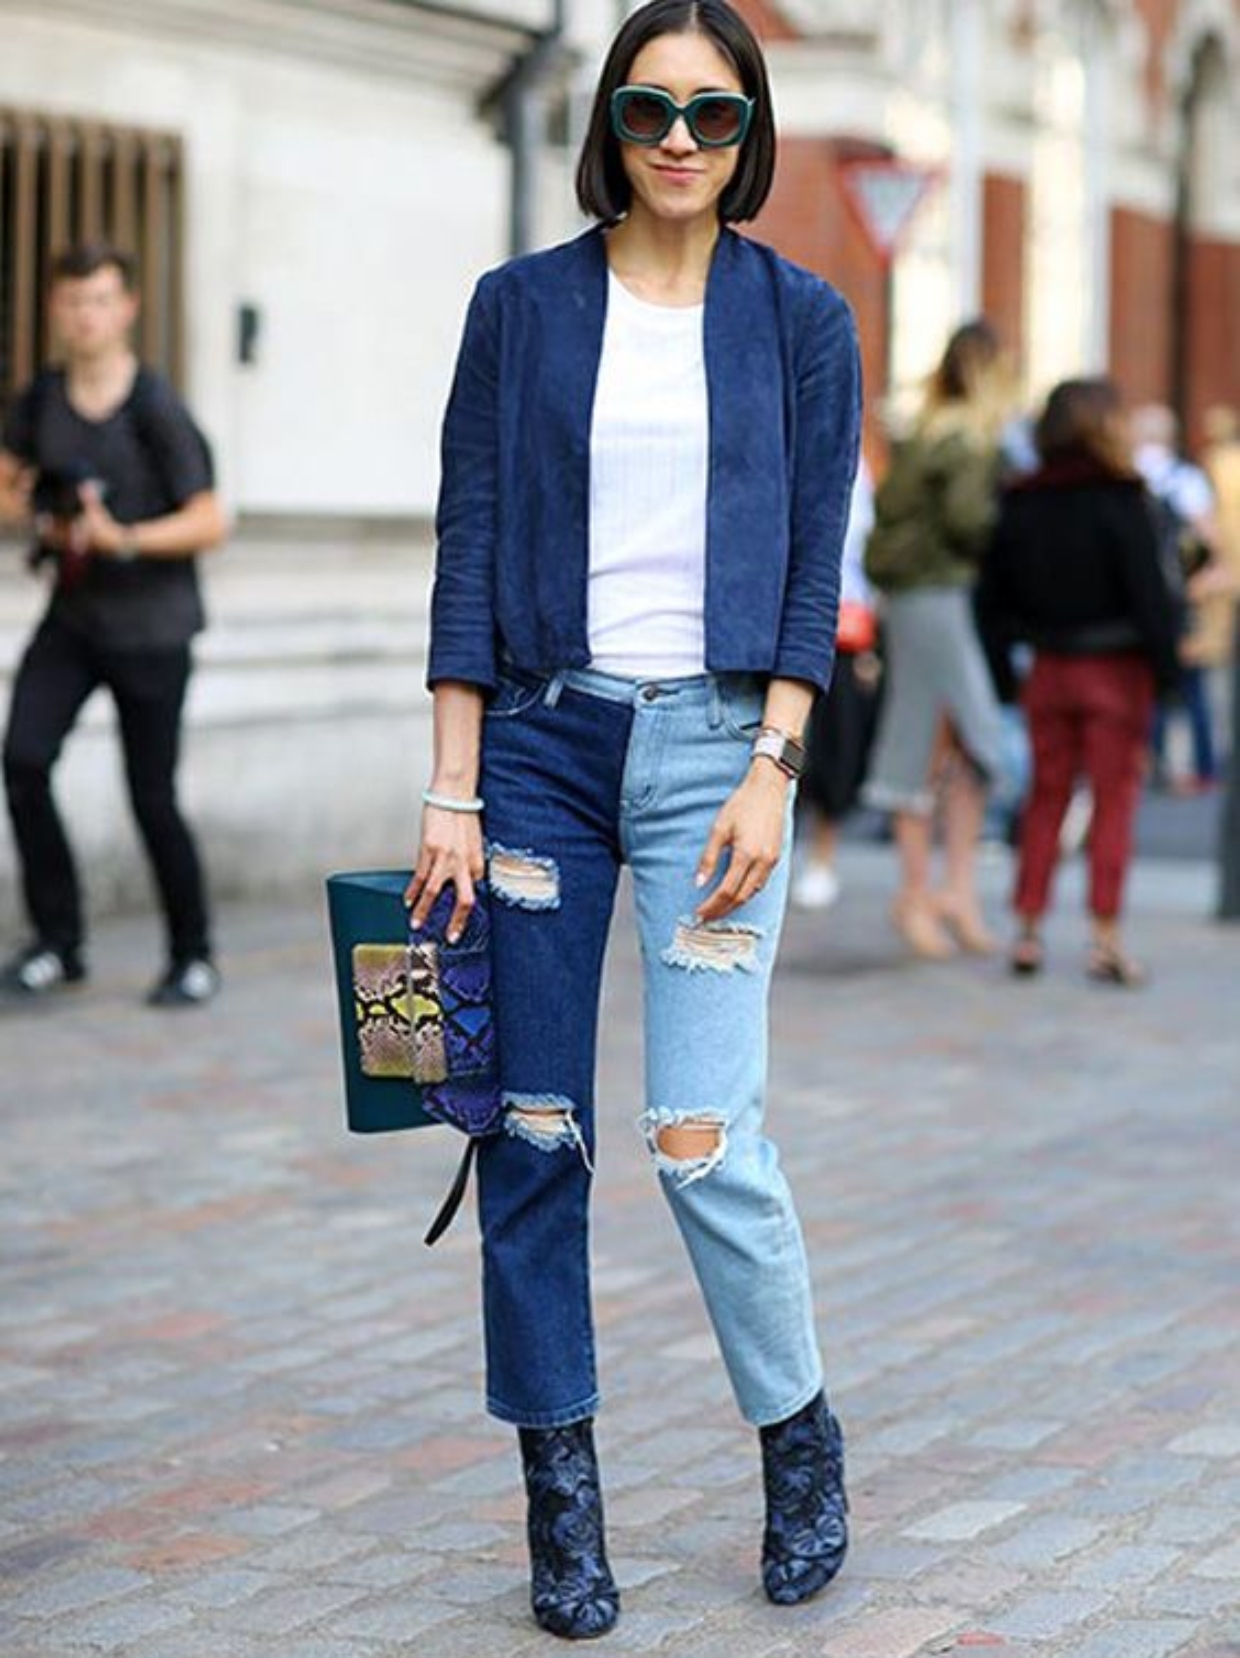 inovando nos looks com calça jeans bicolor